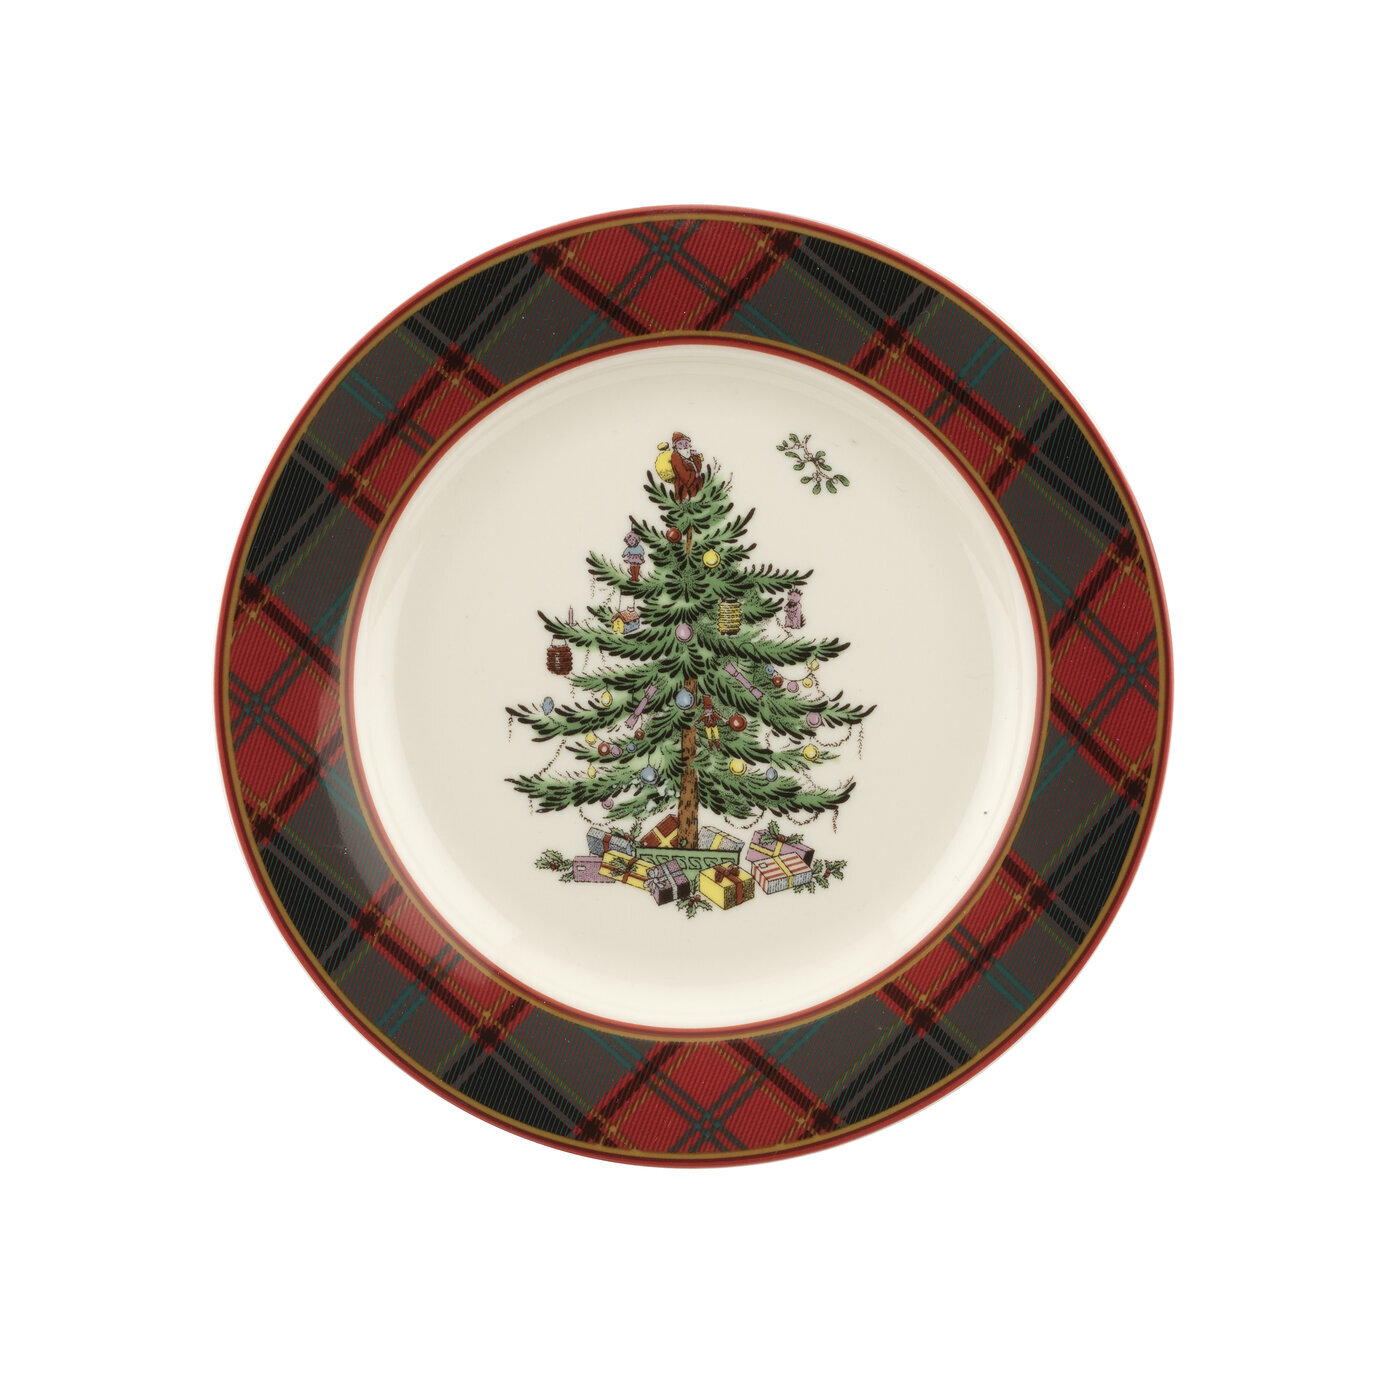 https://assets.wfcdn.com/im/48284504/compr-r85/1241/124125702/spode-christmas-tree-tartan-8-salad-plate.jpg